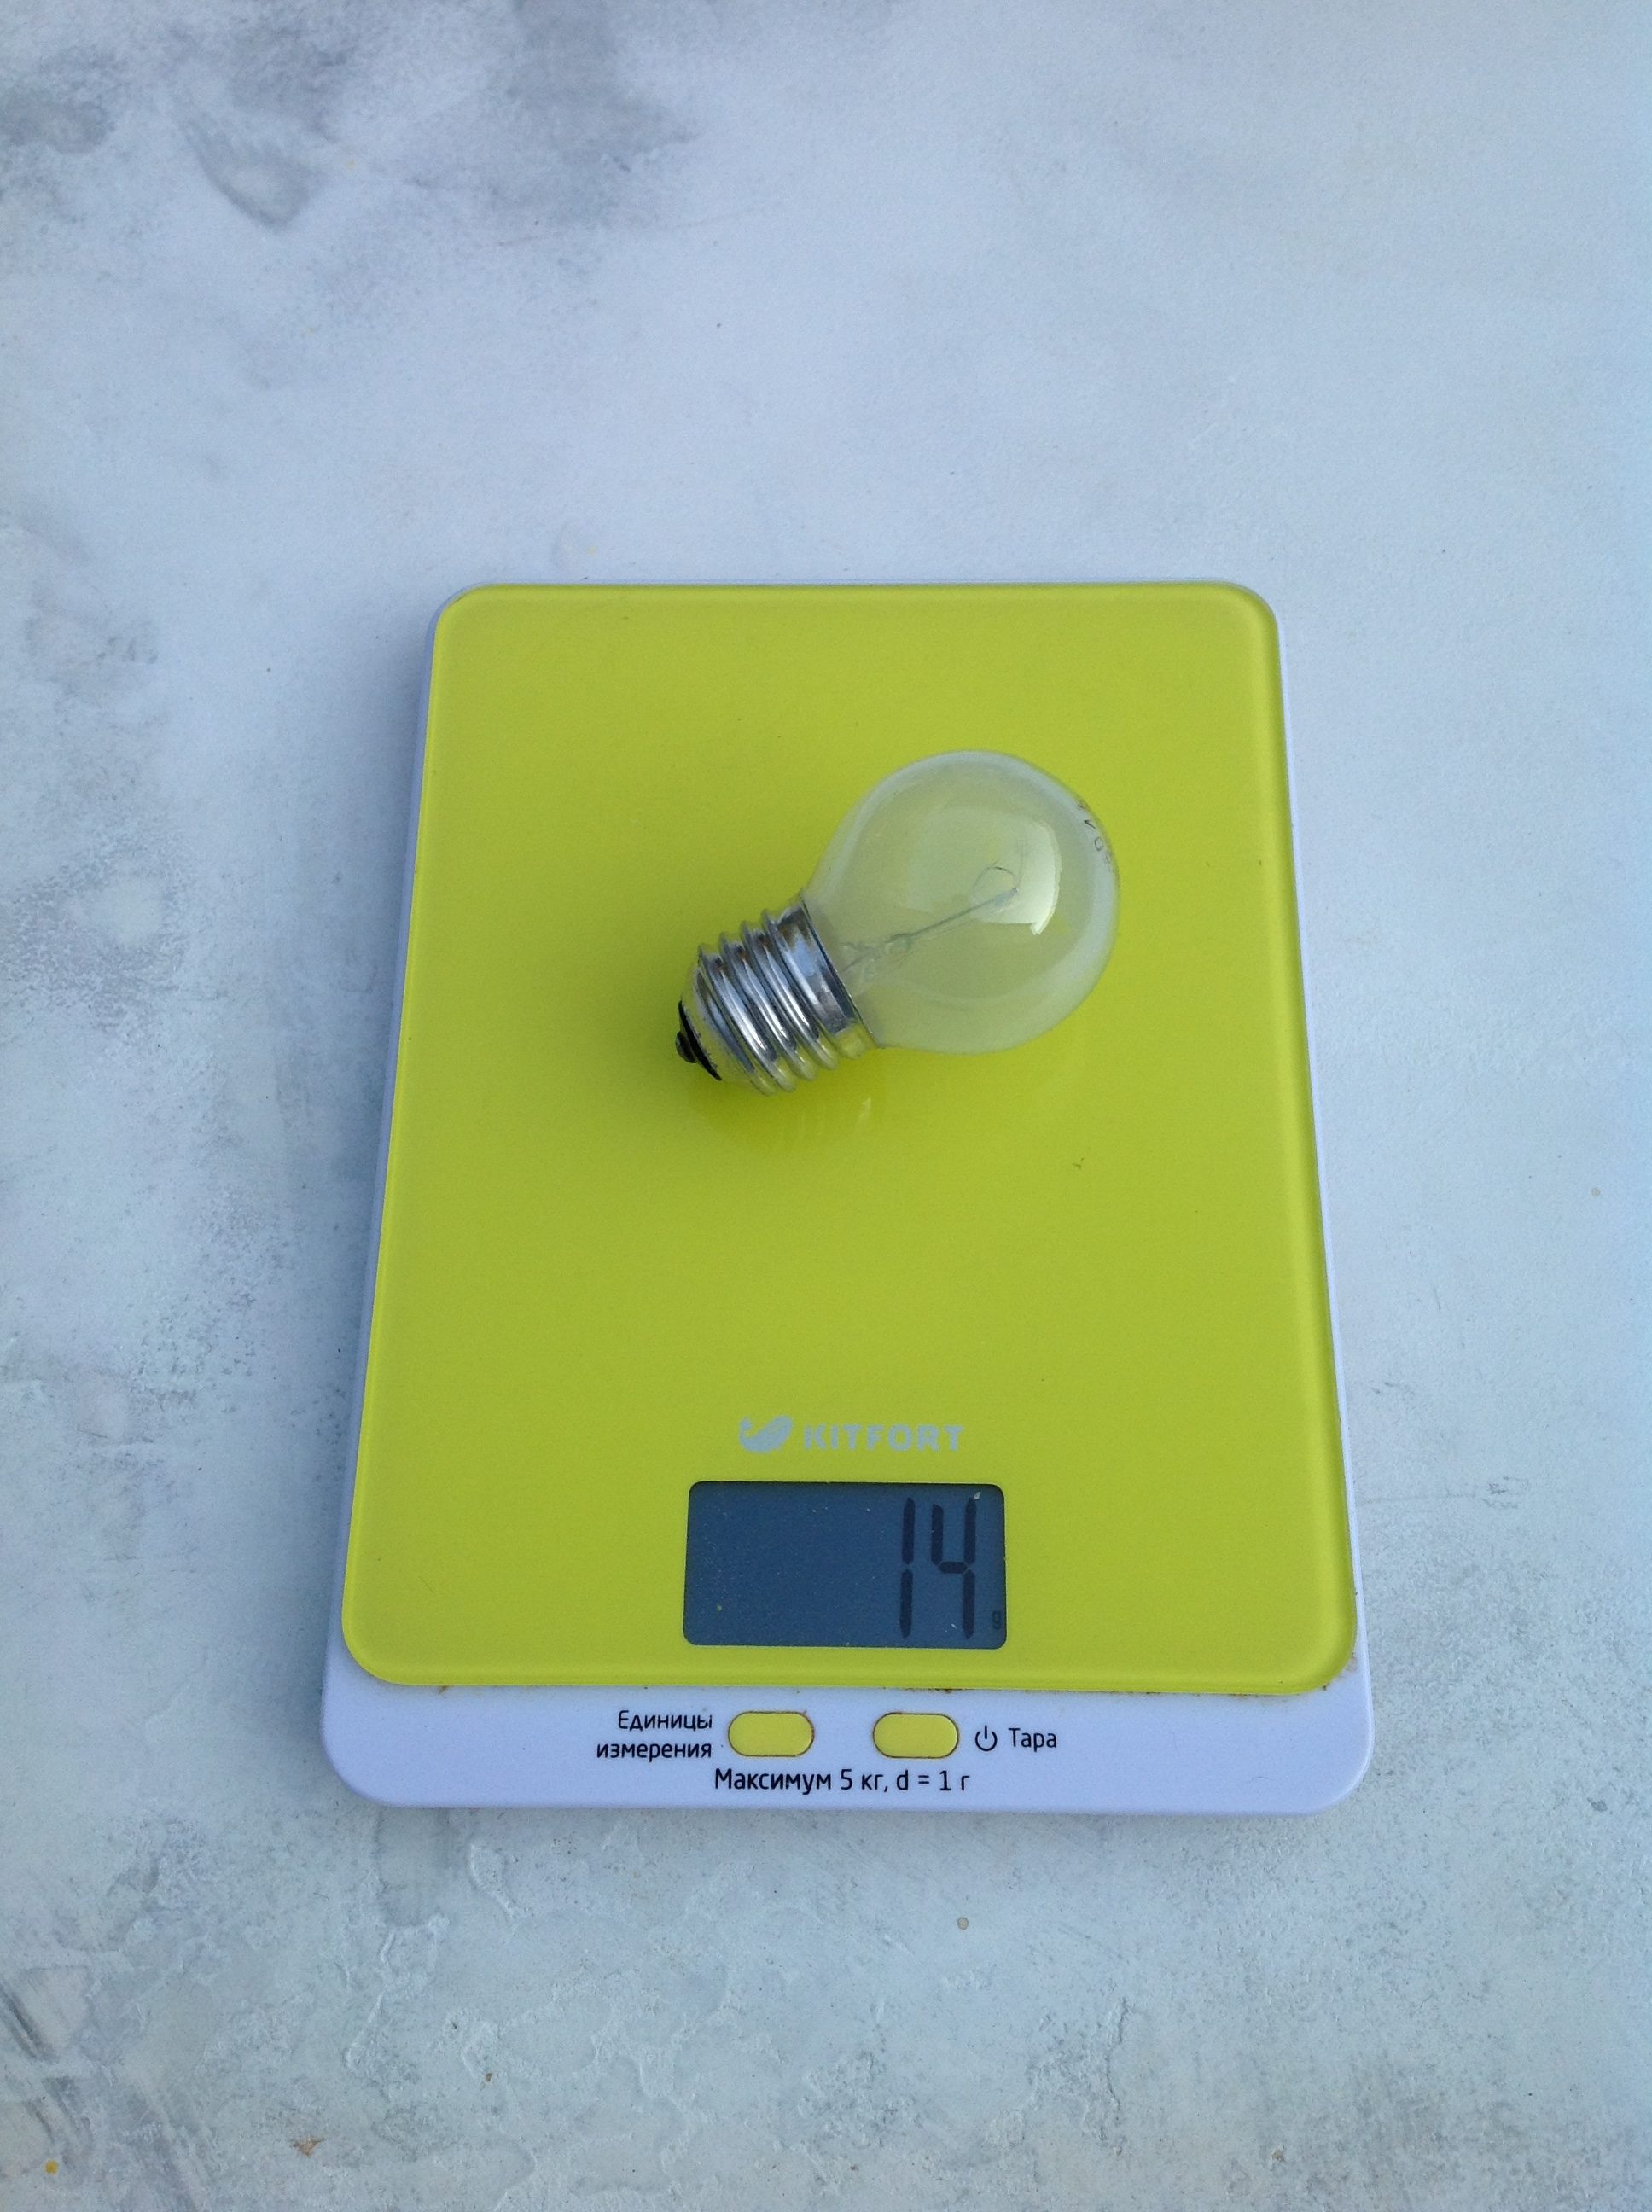 Berapa berat bola lampu buram kecil?